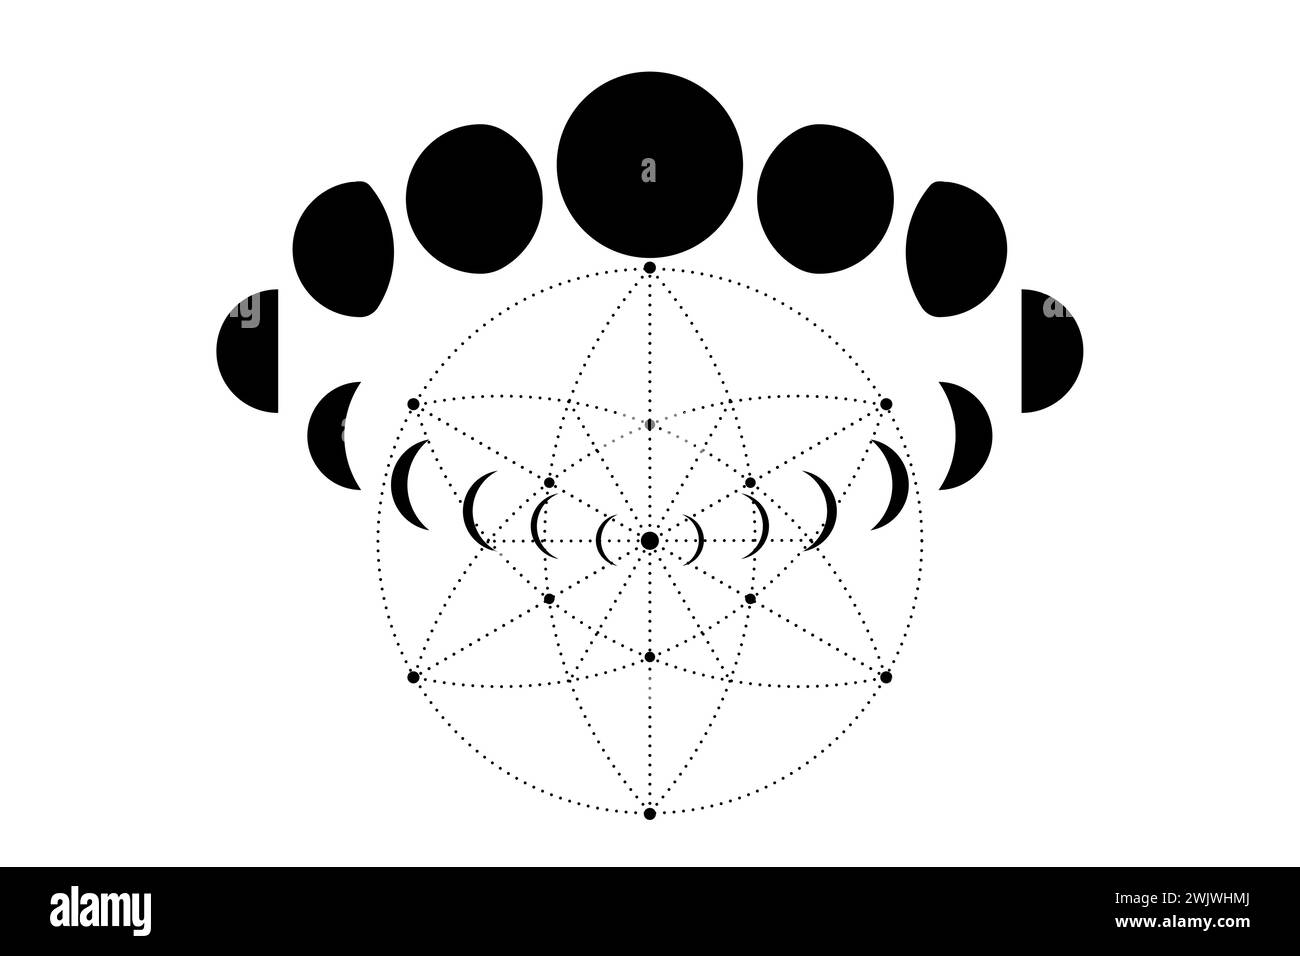 Mondphasen auf heiliger Geometrie. Mystische Zeichnung geometrischer Energiekreise, magische Astrologie Symbole, Alchemie, Esoterik, Okkultismus Zeichen, schwarzer Vektor Stock Vektor